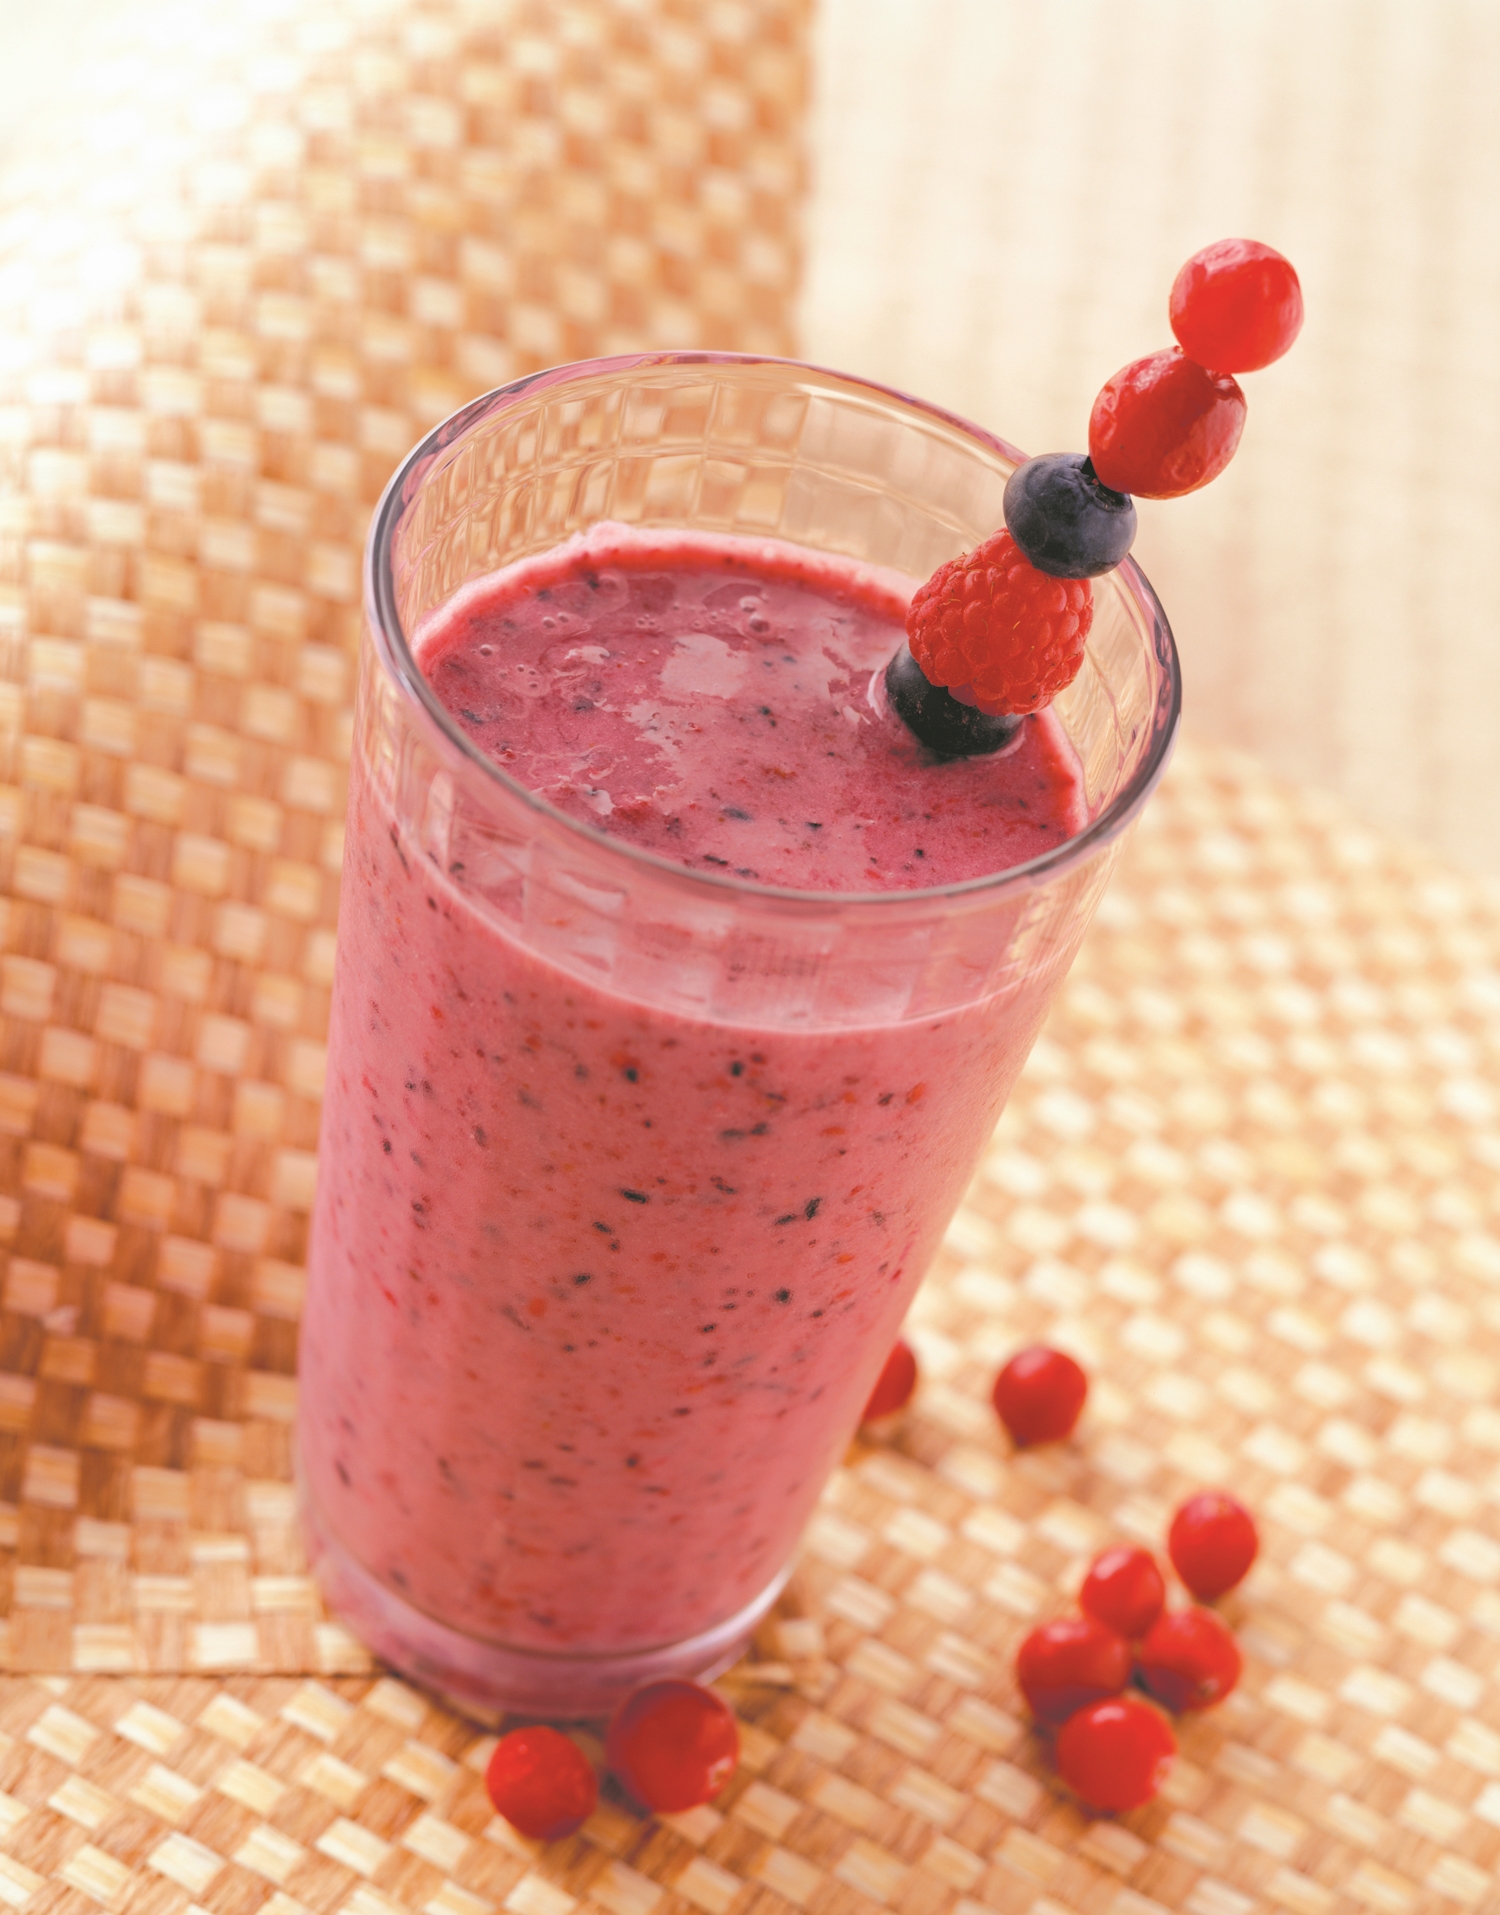 有機蔬果汁/蔬菜汁商品介紹-生機水果系列|蔓越莓配方果汁|Mountain Cranberry Plus Juice|350元(1瓶)